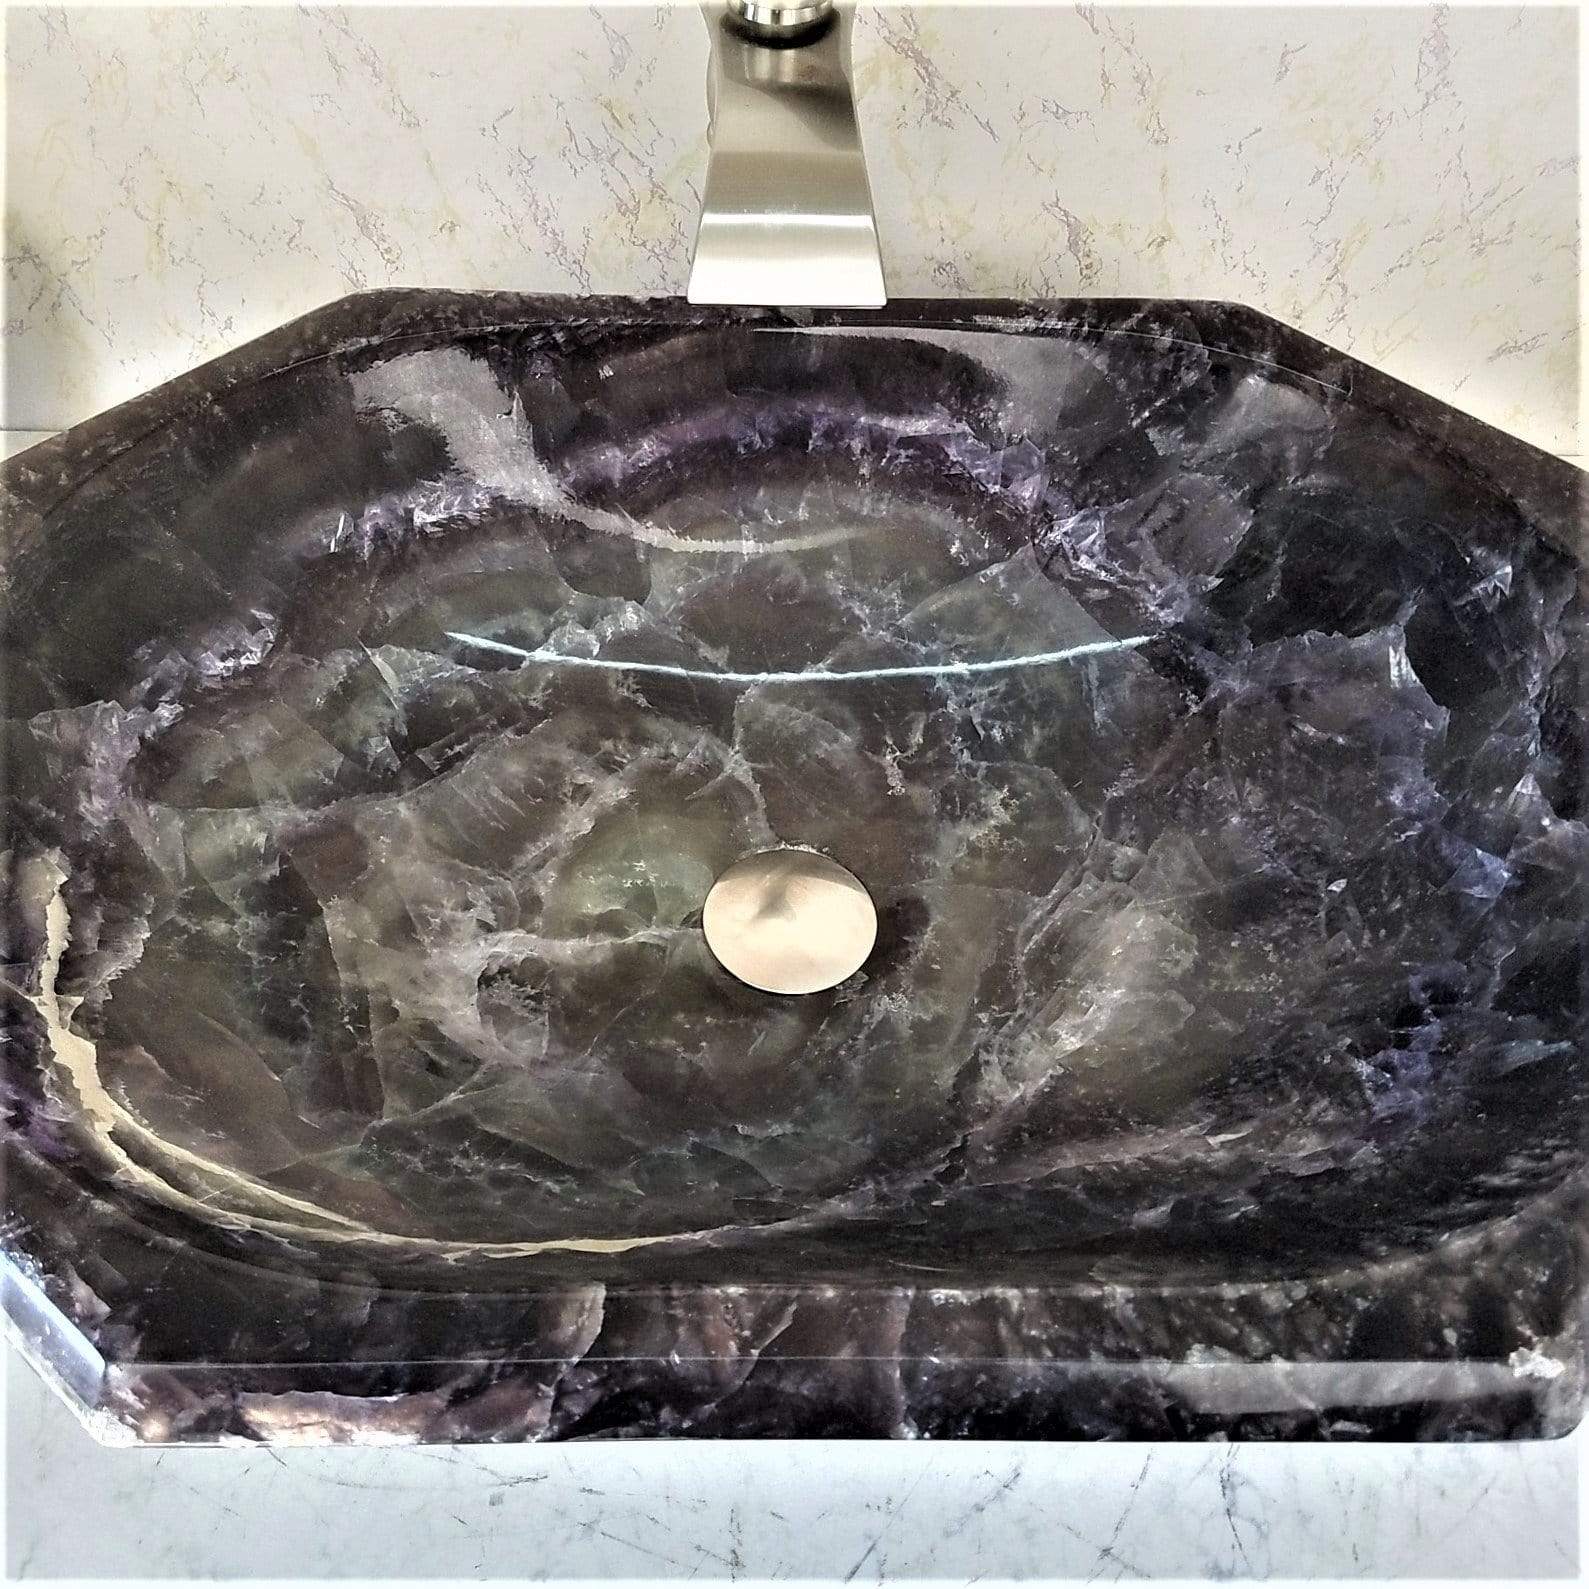 Amethyst Purple Onyx Sink Octagonal #014 (25” x 18” x 6” tall x 140/lbs)